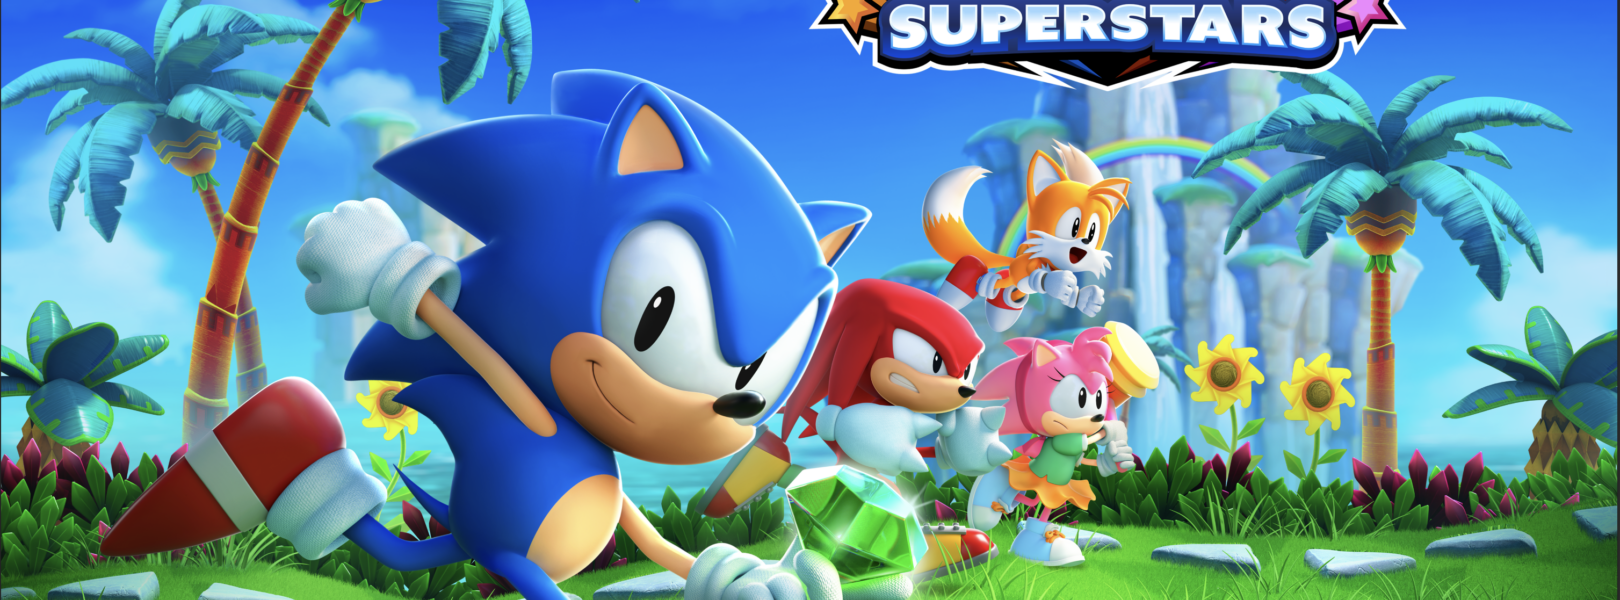 Sonic Superstars - PlayStation 5